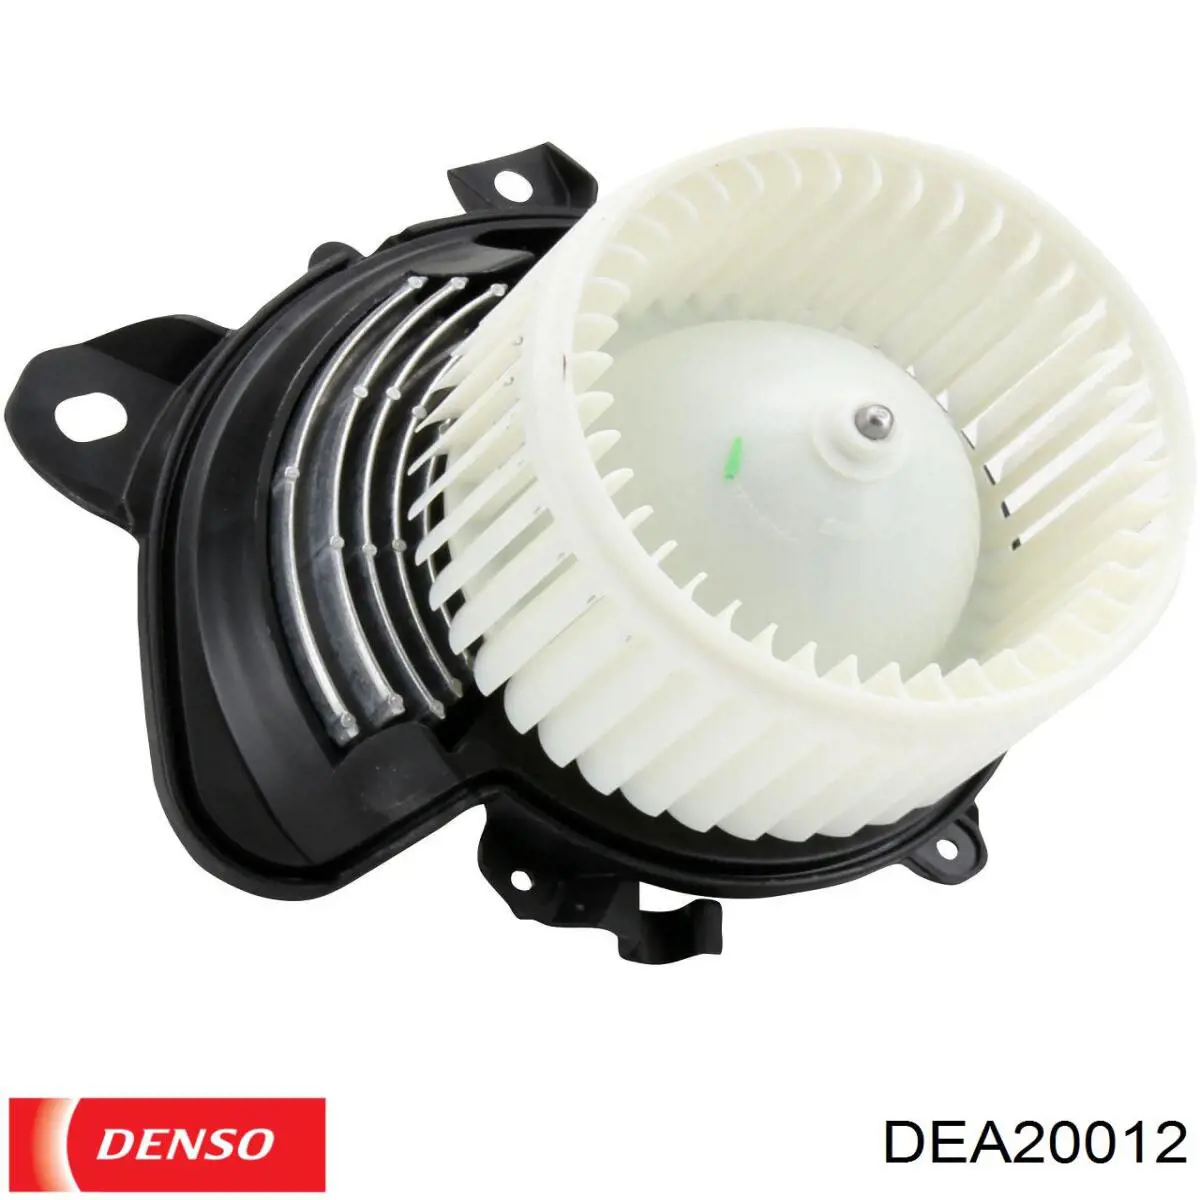 DEA20012 Denso motor de ventilador aire acondicionado